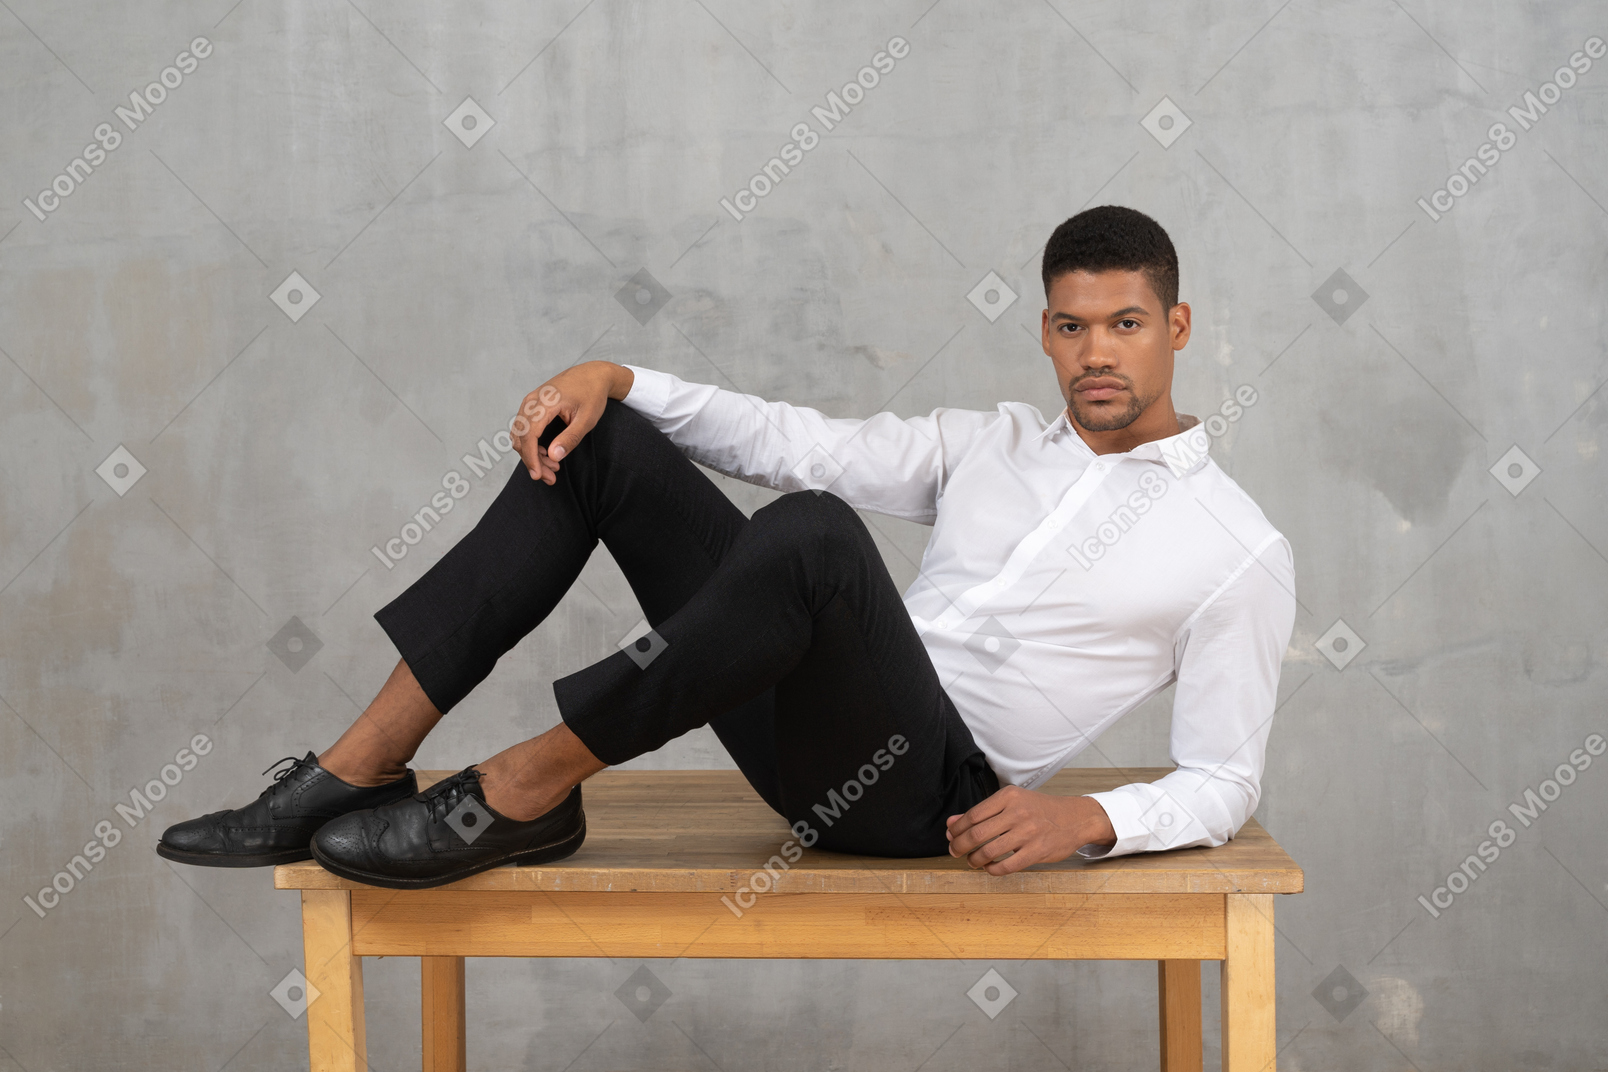 Мужчина в формальной одежде лежит на столе